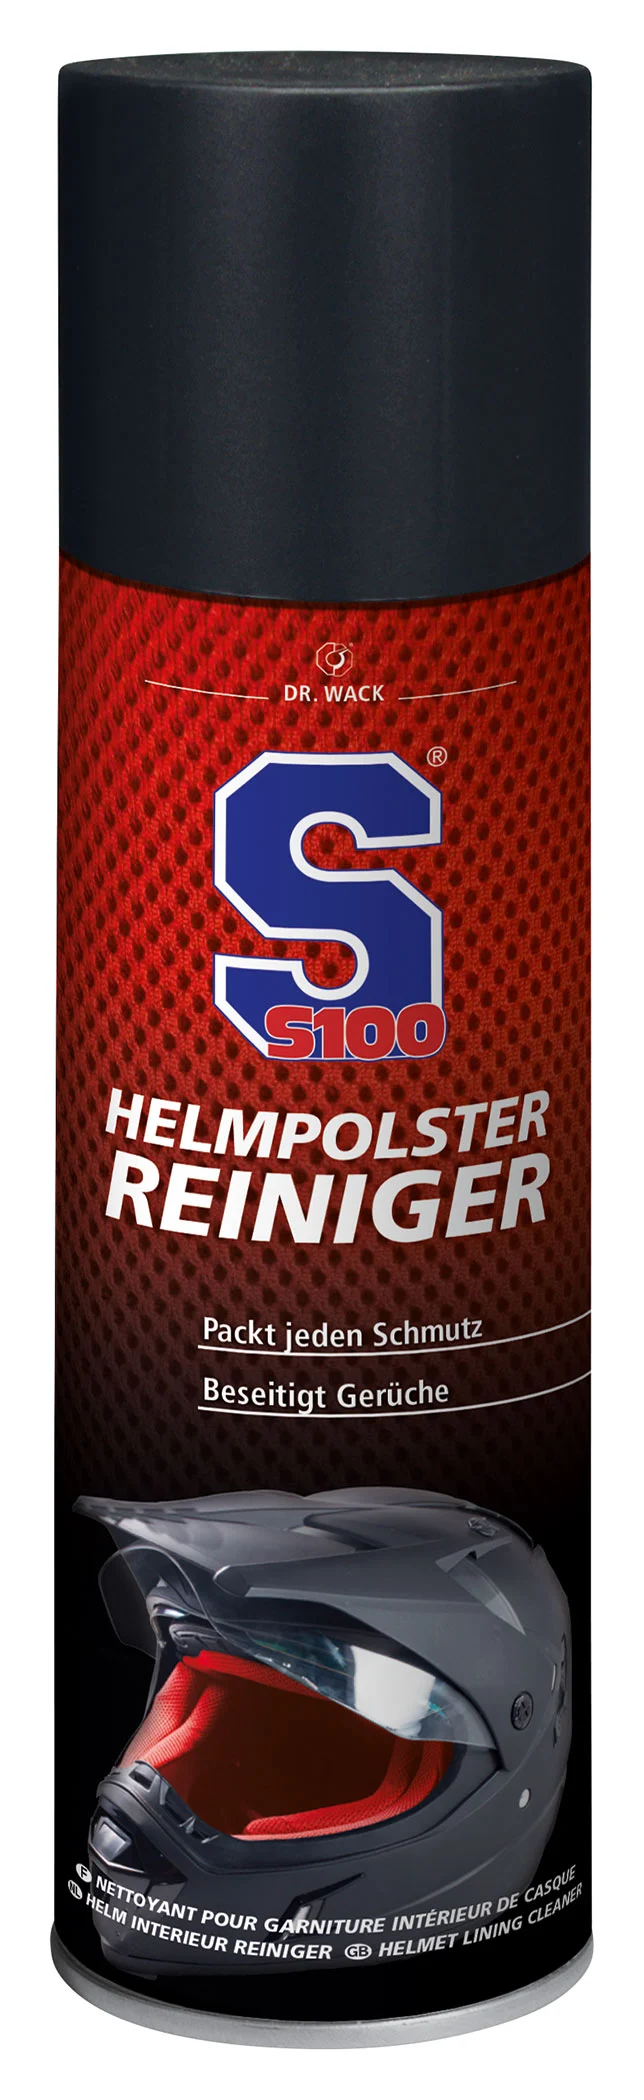 S100 HELMPOLSTER-REINIGER